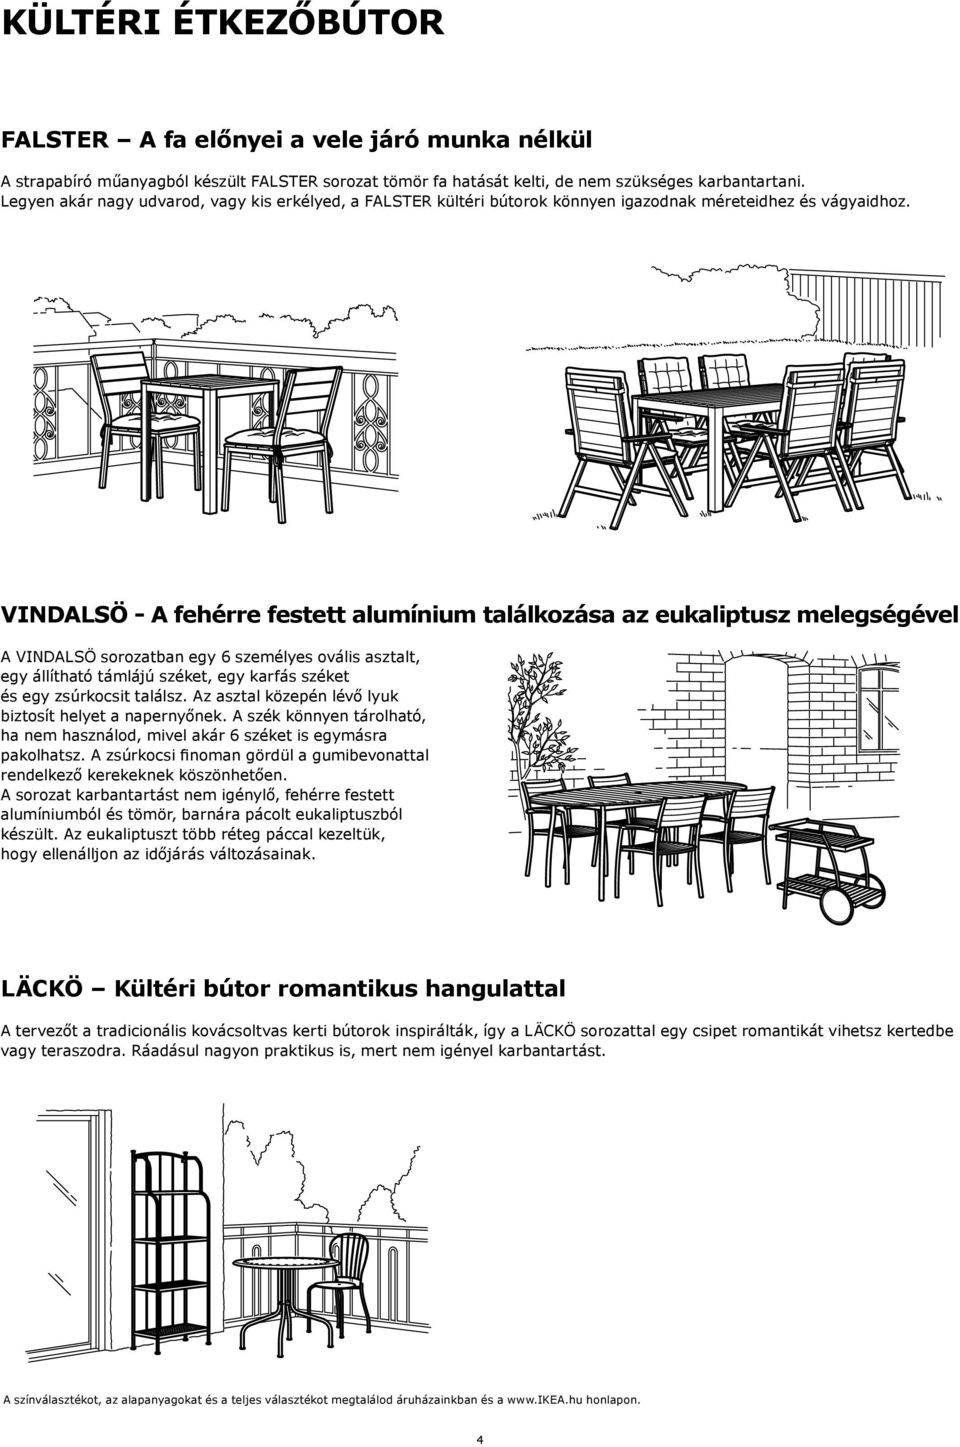 VINDALSÖ - A fehérre festett alumínium találkozása az eukaliptusz melegségével A VINDALSÖ sorozatban egy 6 személyes ovális asztalt, egy állítható támlájú széket, egy karfás széket és egy zsúrkocsit